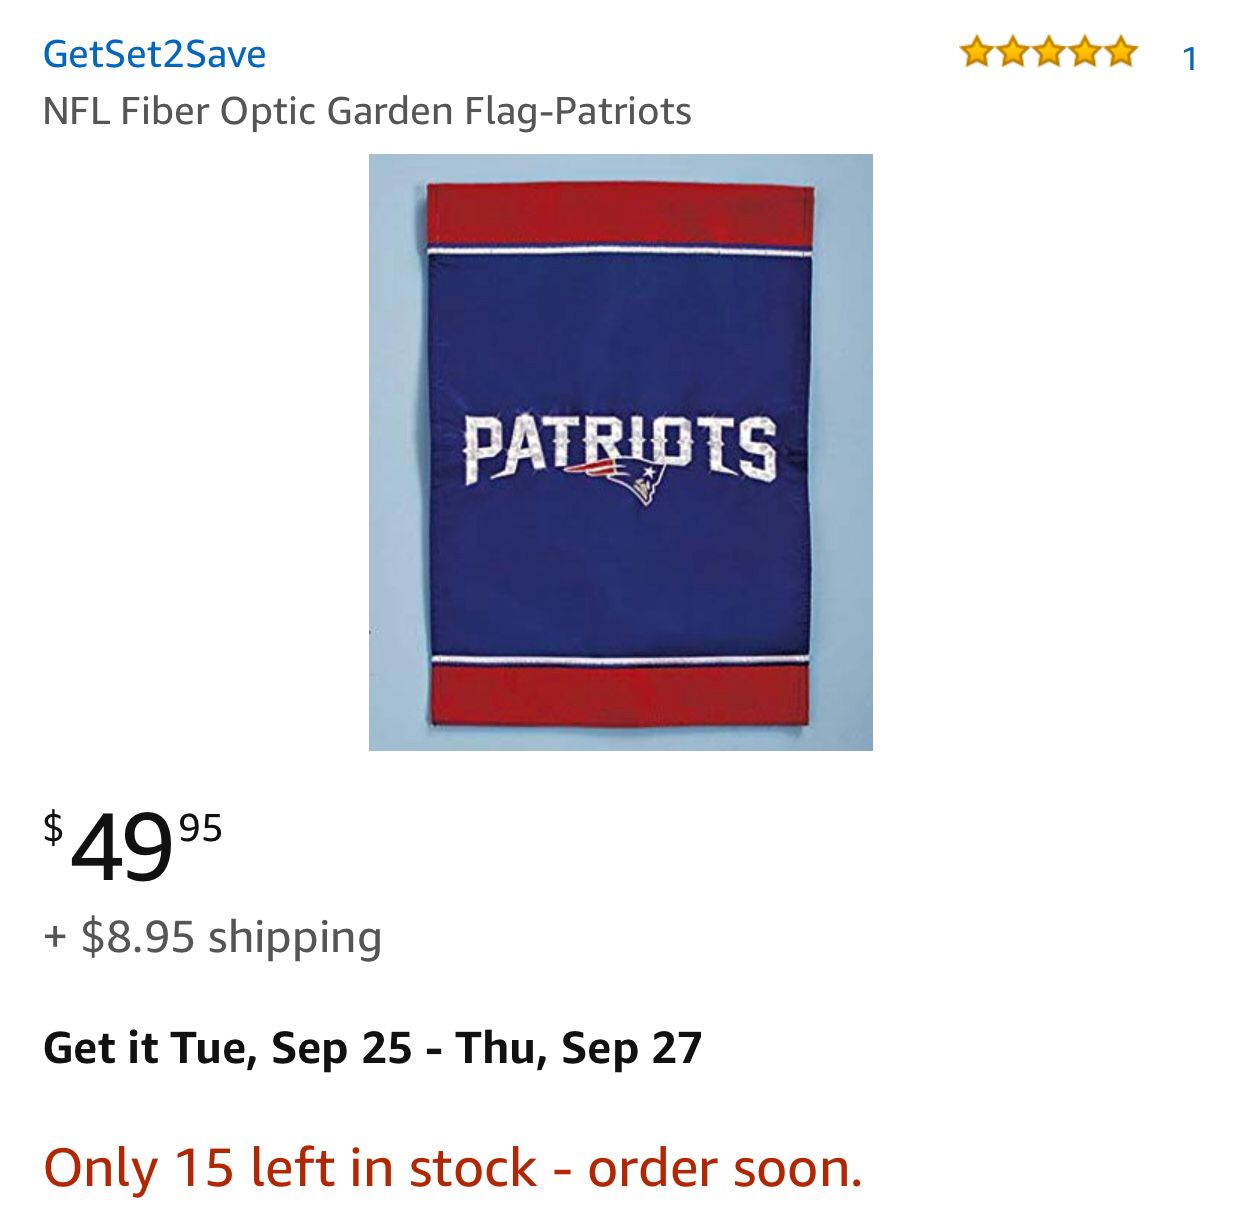 NFL Fiber Optic Garden Flag-Patriots